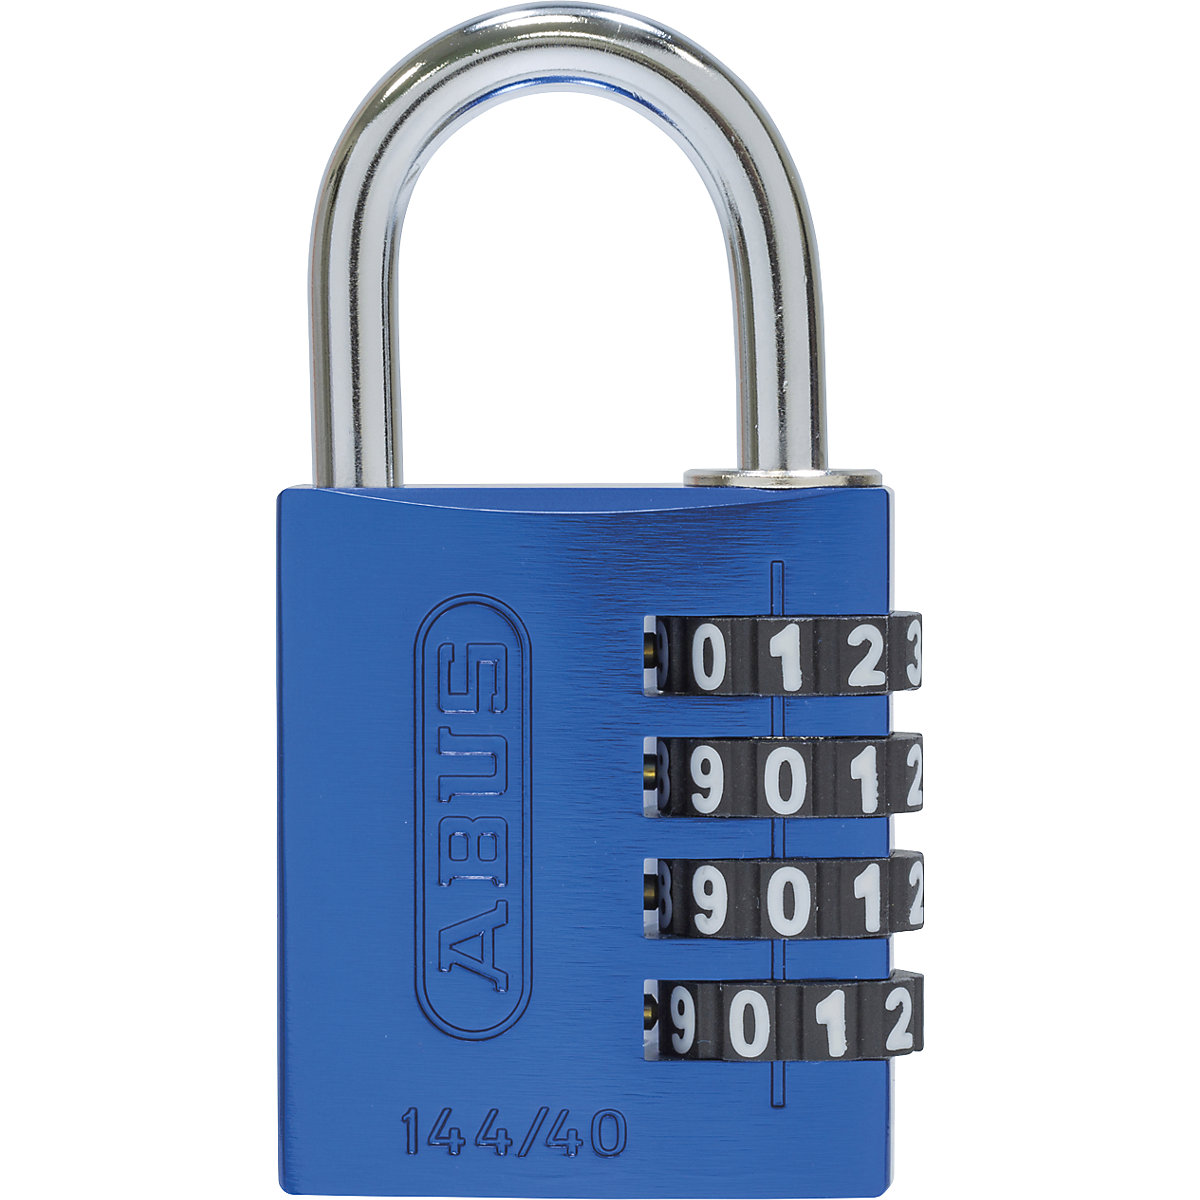 Brava s kombinacijom brojeva, aluminijska – ABUS, 144/40 Lock-Tag, pak. 6 kom., u plavoj boji-5